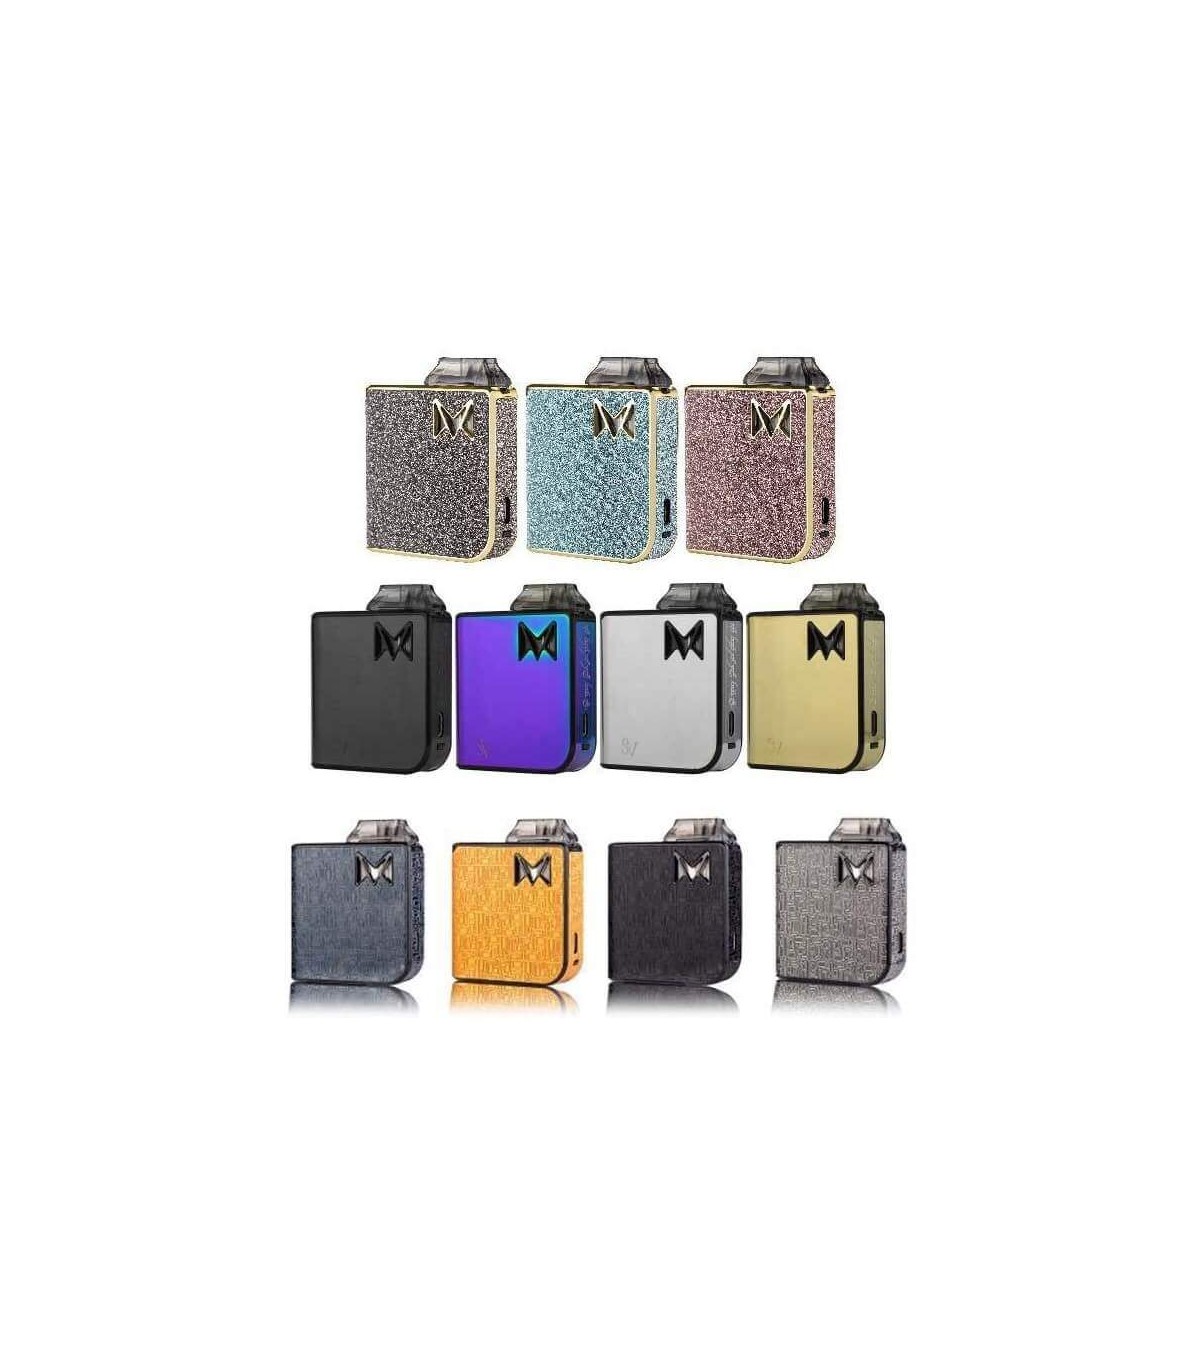 Buy Mi Pod Vape Kit By Smoking Vapor Mods Devices Mi Pod Online 